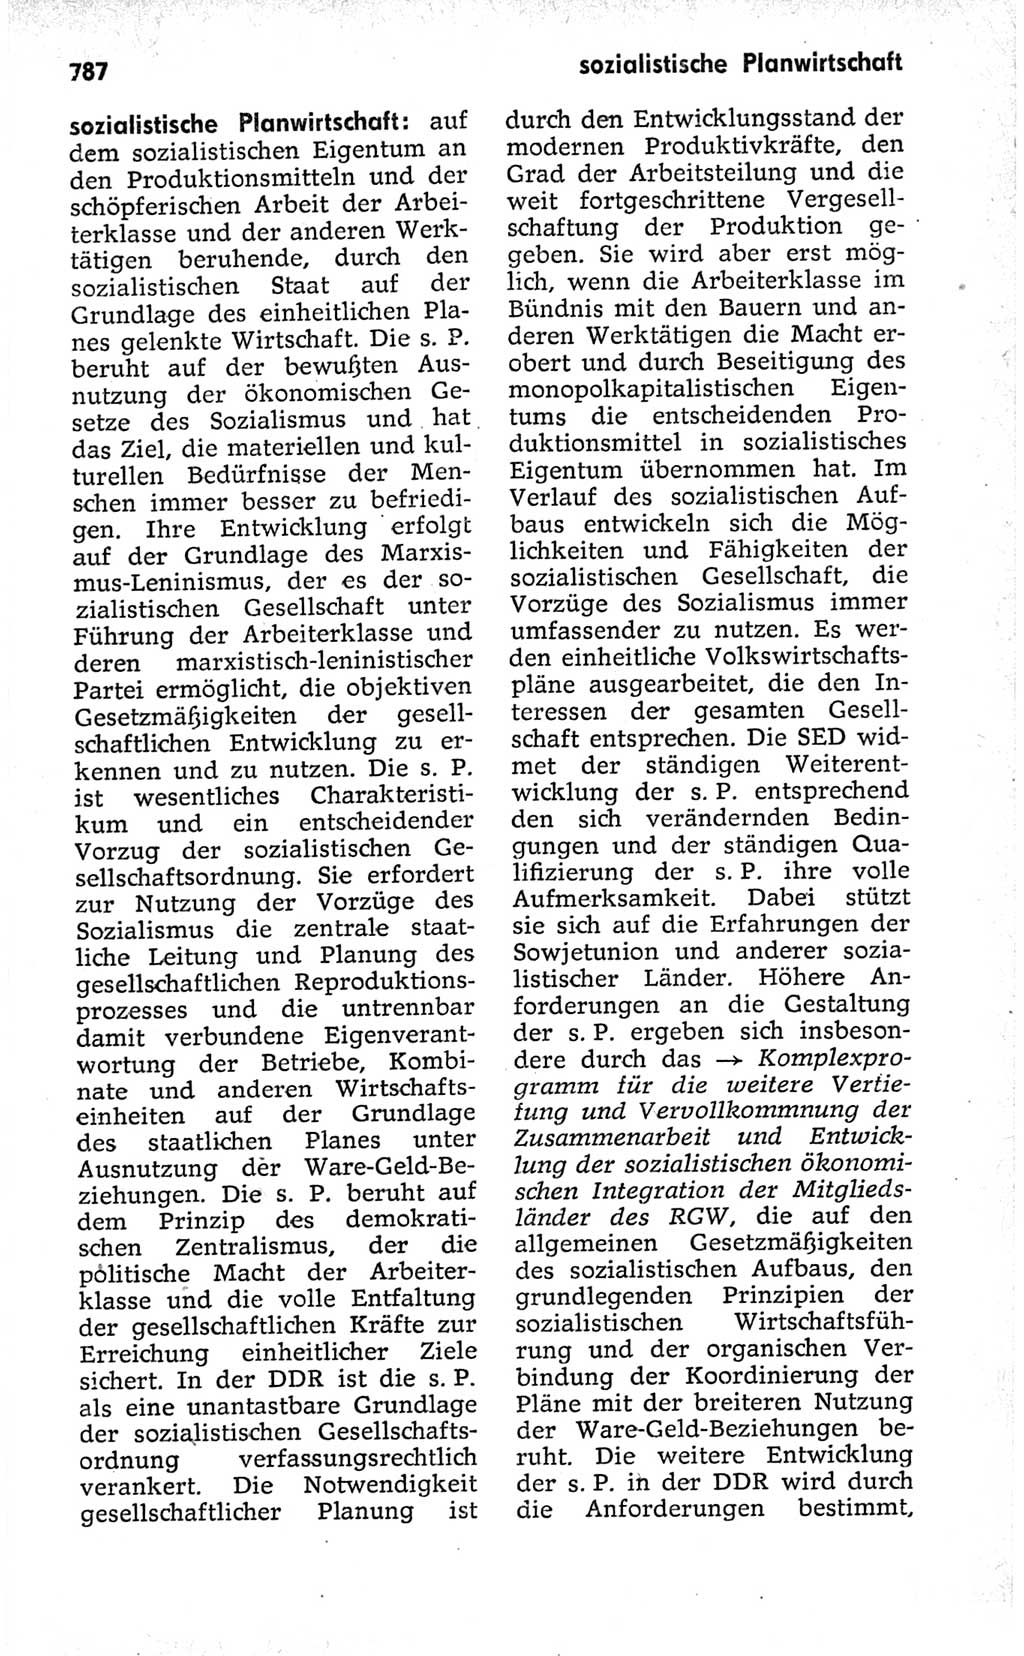 Kleines politisches Wörterbuch [Deutsche Demokratische Republik (DDR)] 1973, Seite 787 (Kl. pol. Wb. DDR 1973, S. 787)